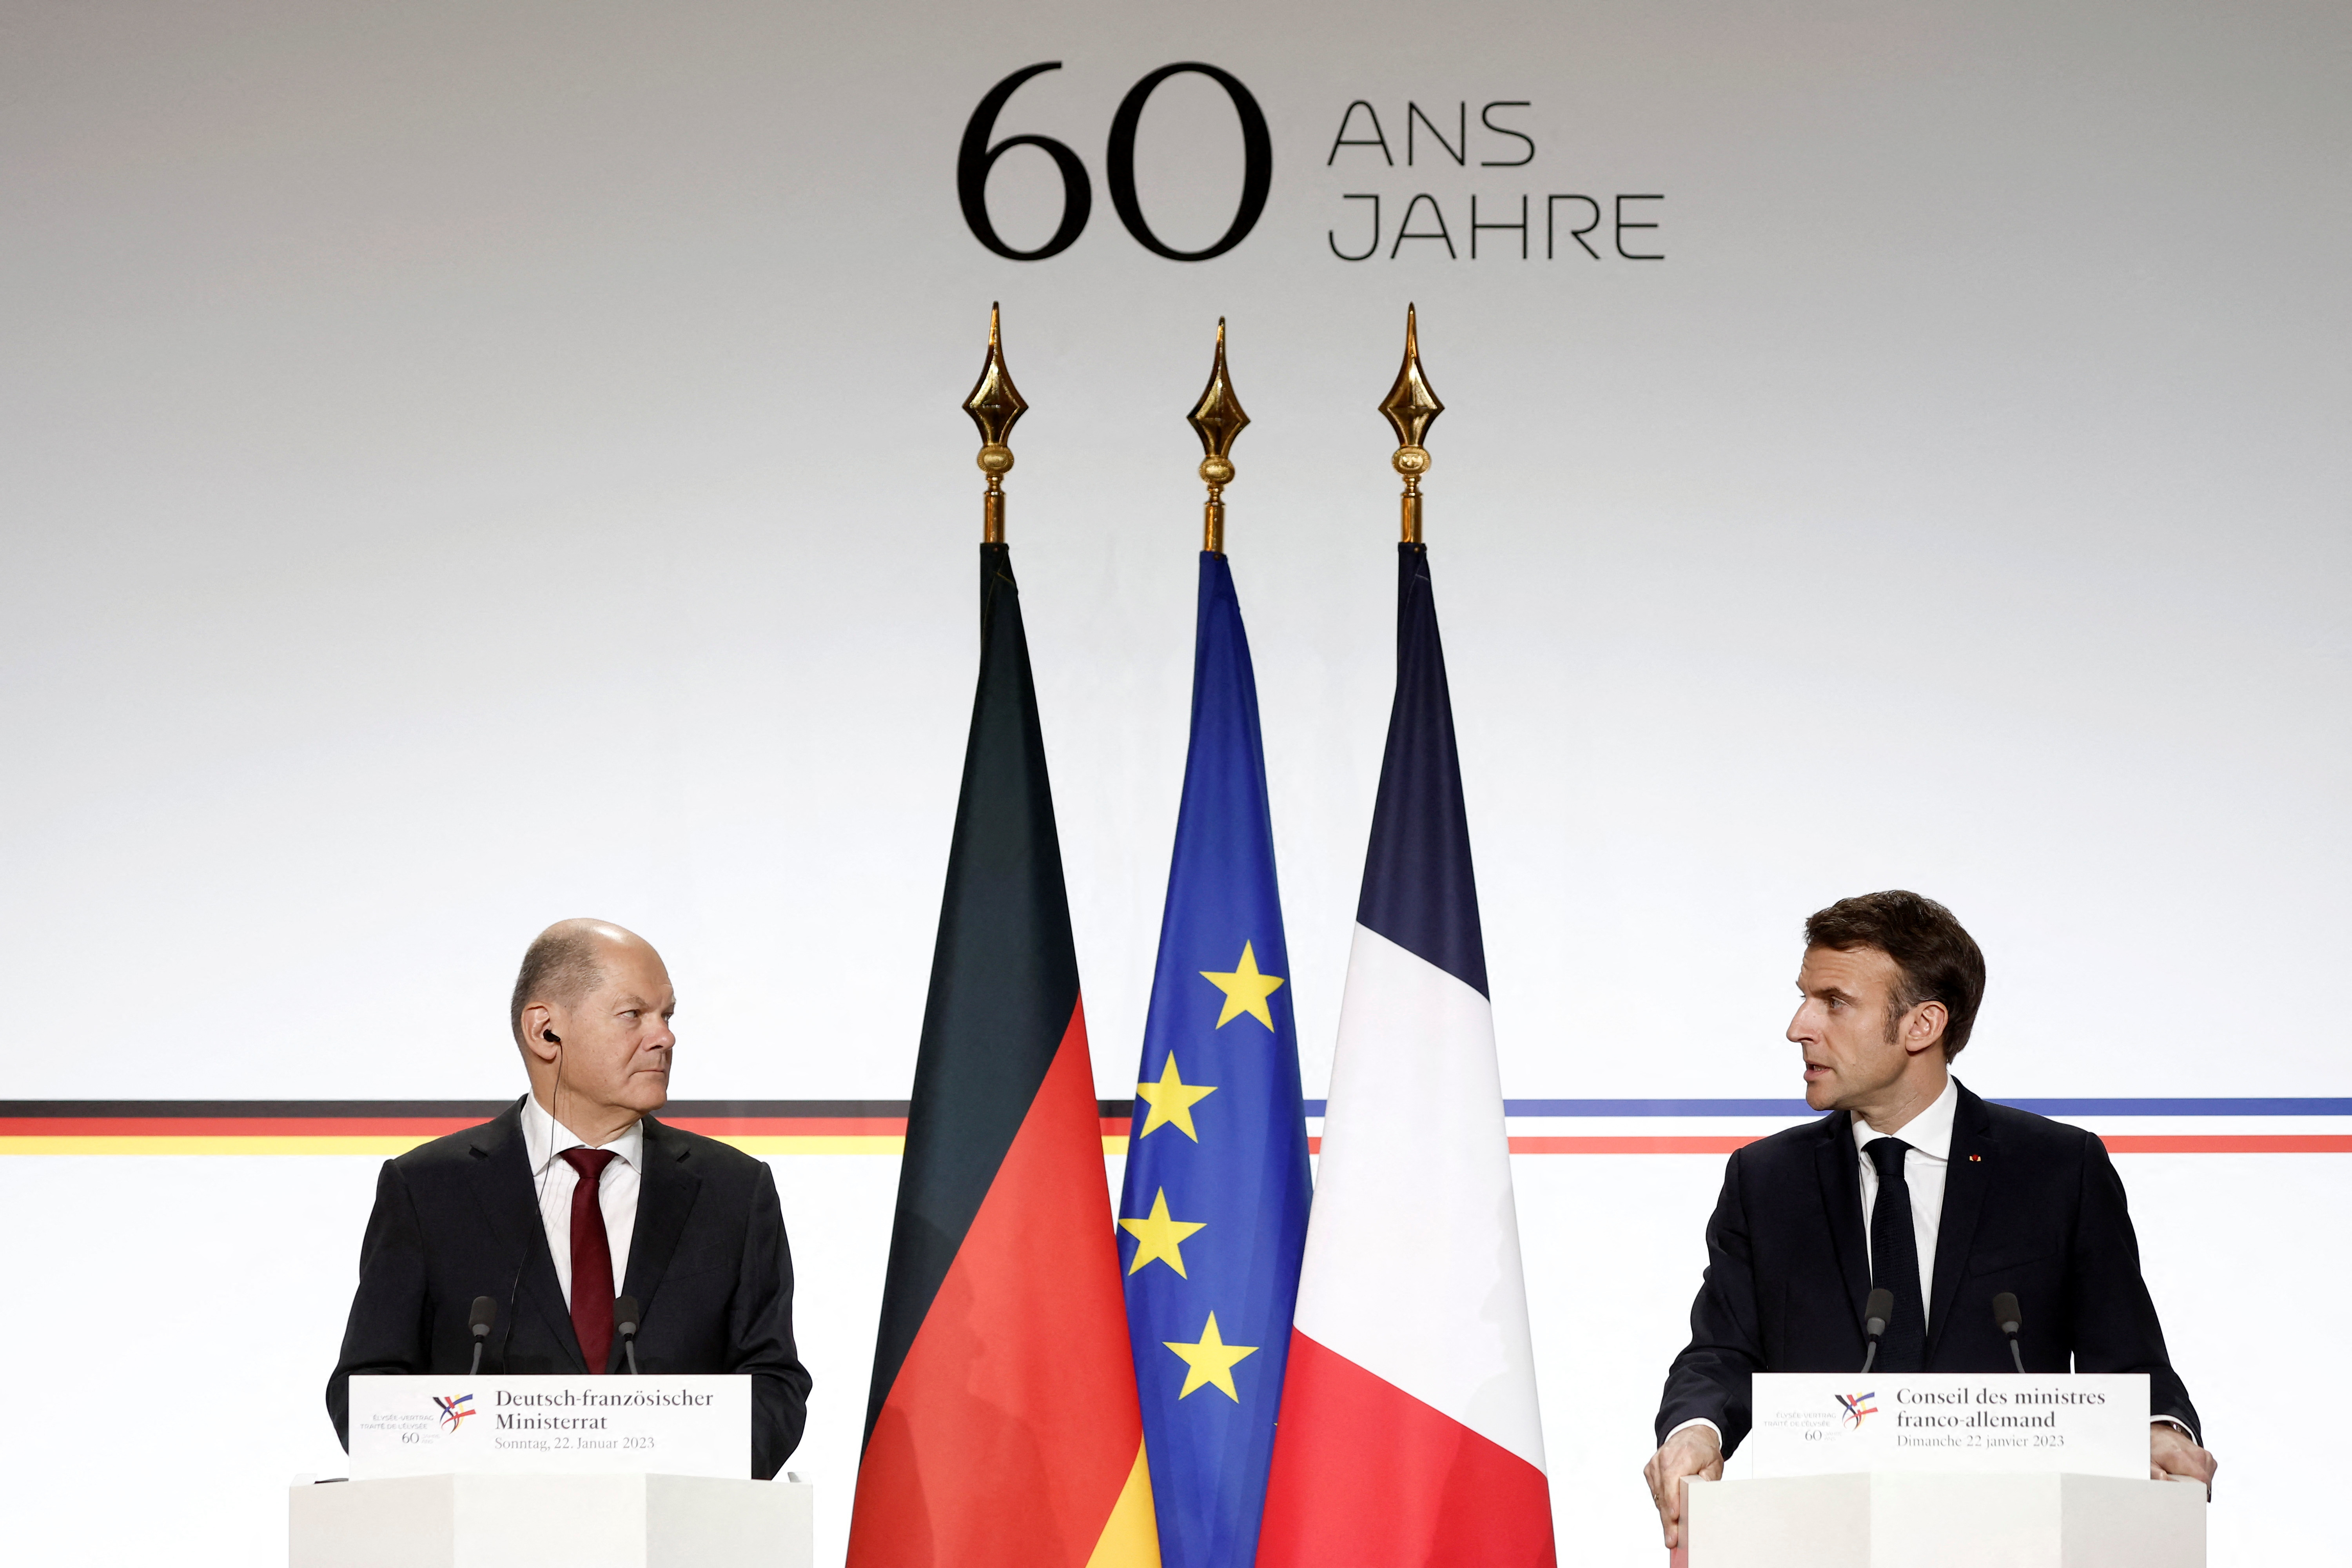 El presidente francés, Emmanuel Macron, y el canciller alemán, Olaf Scholz, asisten a una rueda de prensa conjunta como parte de una reunión del gabinete conjunto franco-alemán en el Palacio del Elíseo en París, Francia, 22 de enero de 2023 (REUTERS)